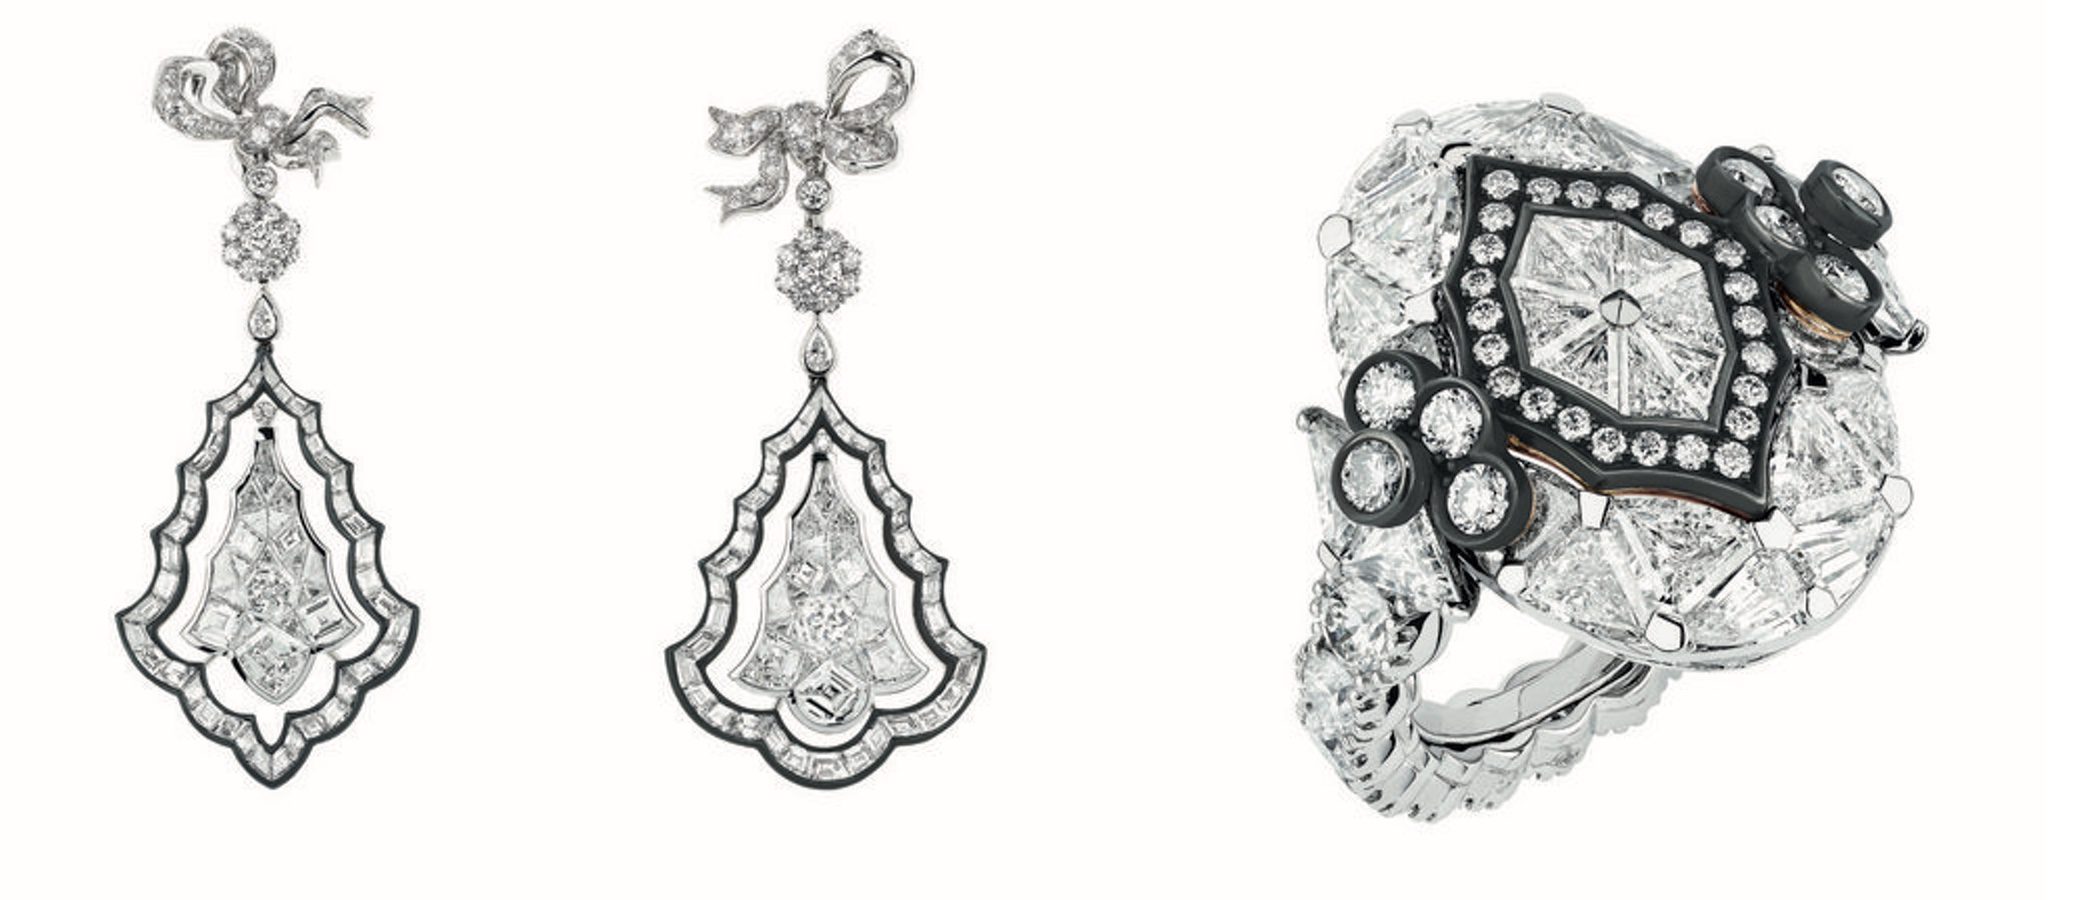 Dior se inspira en el Palacio de Versailles para su nueva colección de joyas